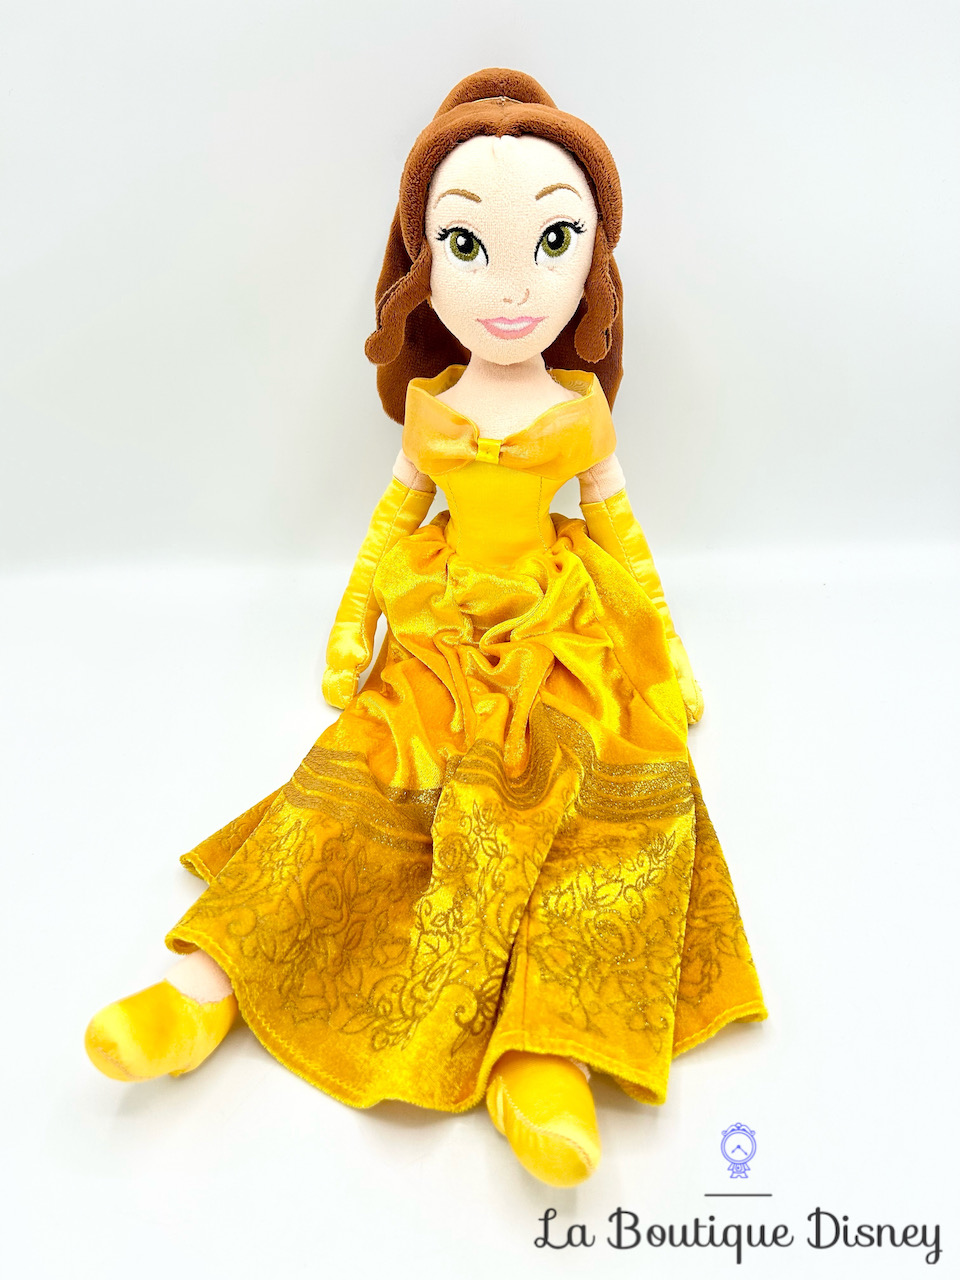 Poupée chiffon Belle La Belle et la Bête Disney Store 2014 peluche princesse jaune velours 52 cm